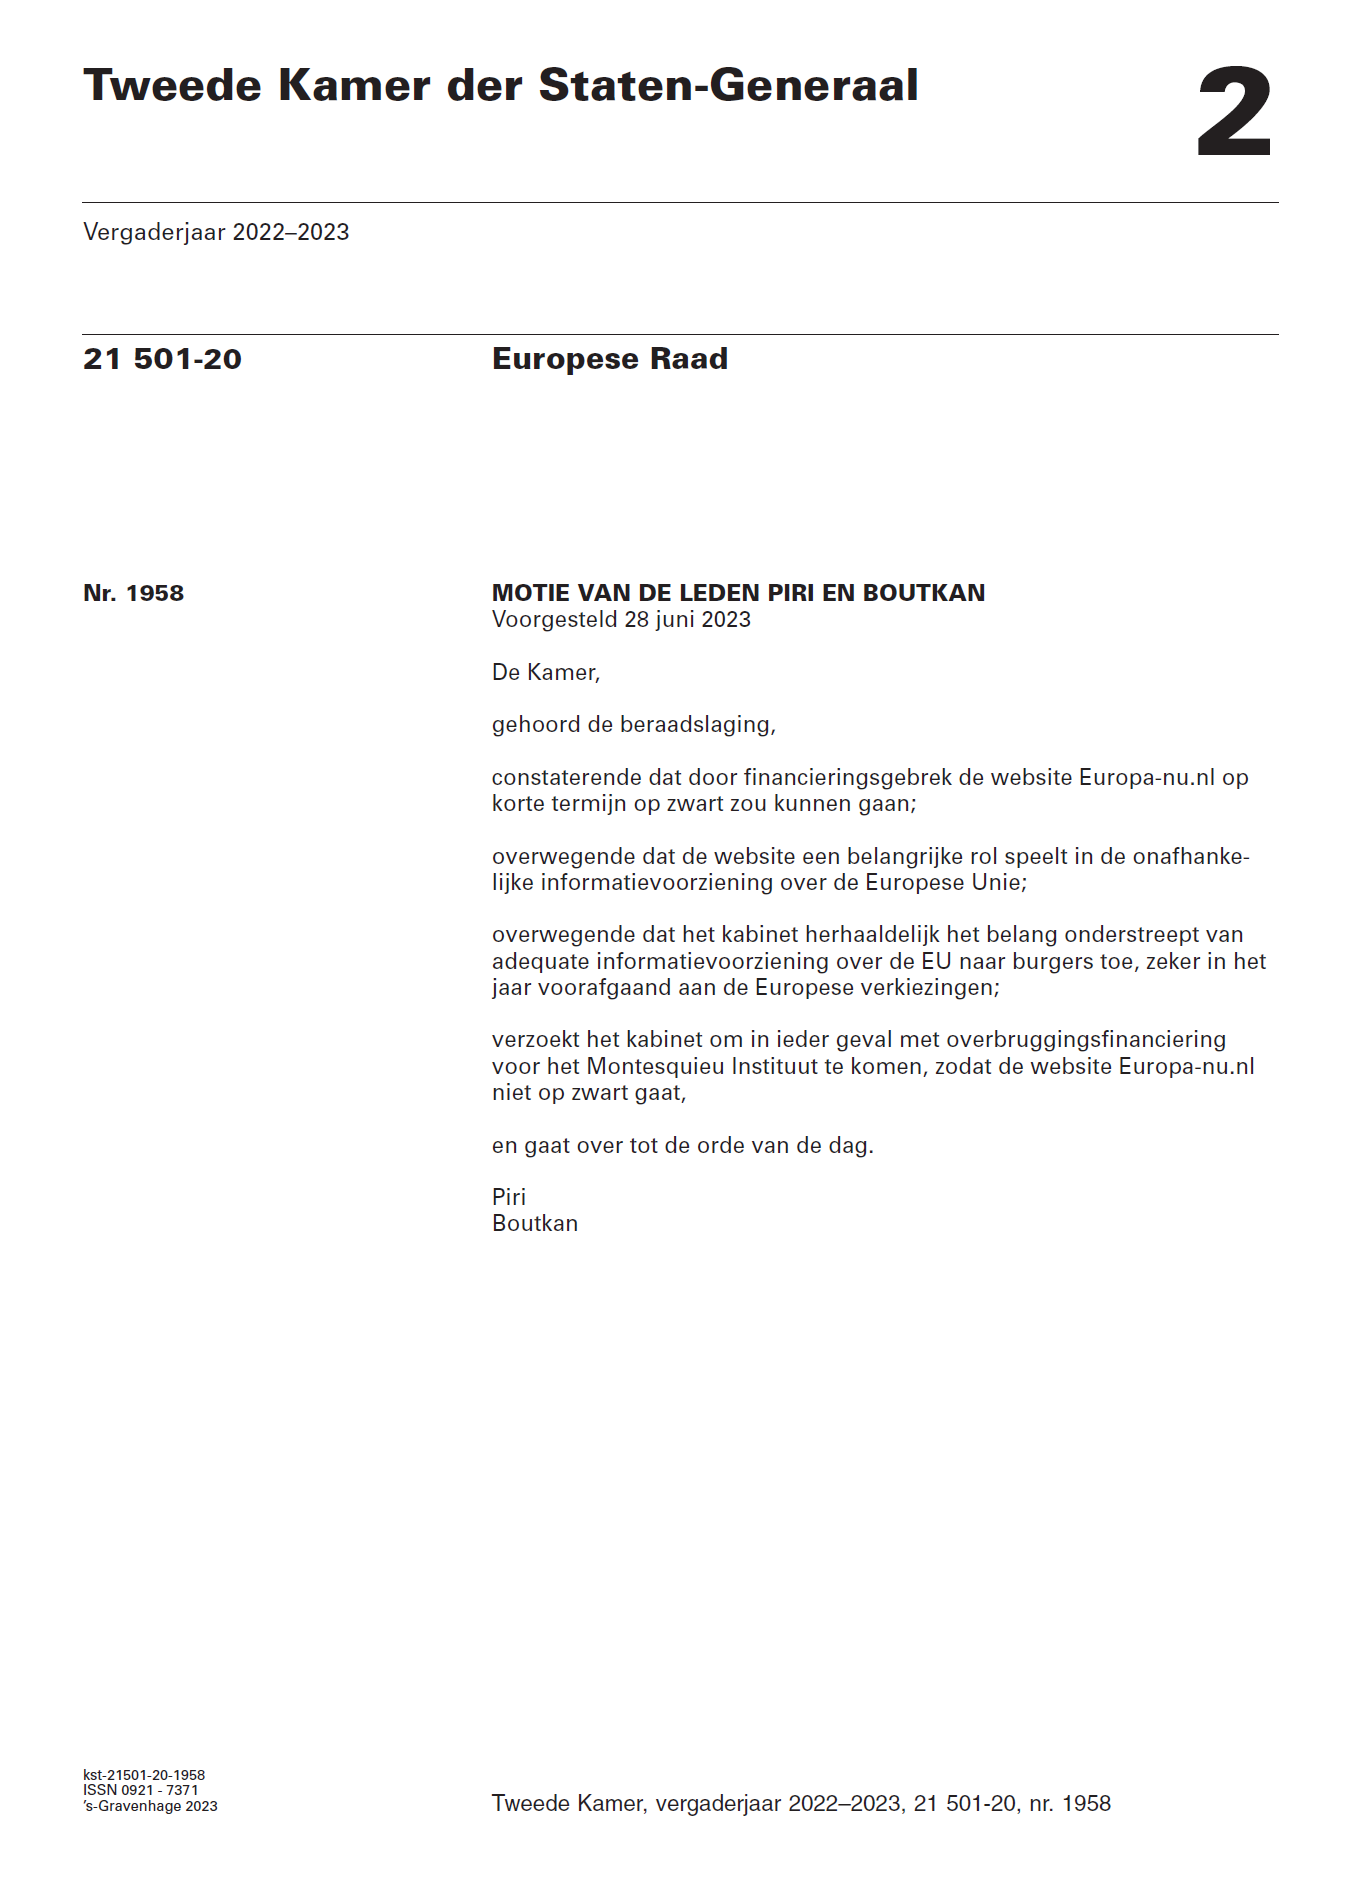 Motie van de leden Piri en Boutkan over een overbruggingsfinanciering voor het Montesquieu Instituut zodat de website europa nu.nl niet op zwart gaat